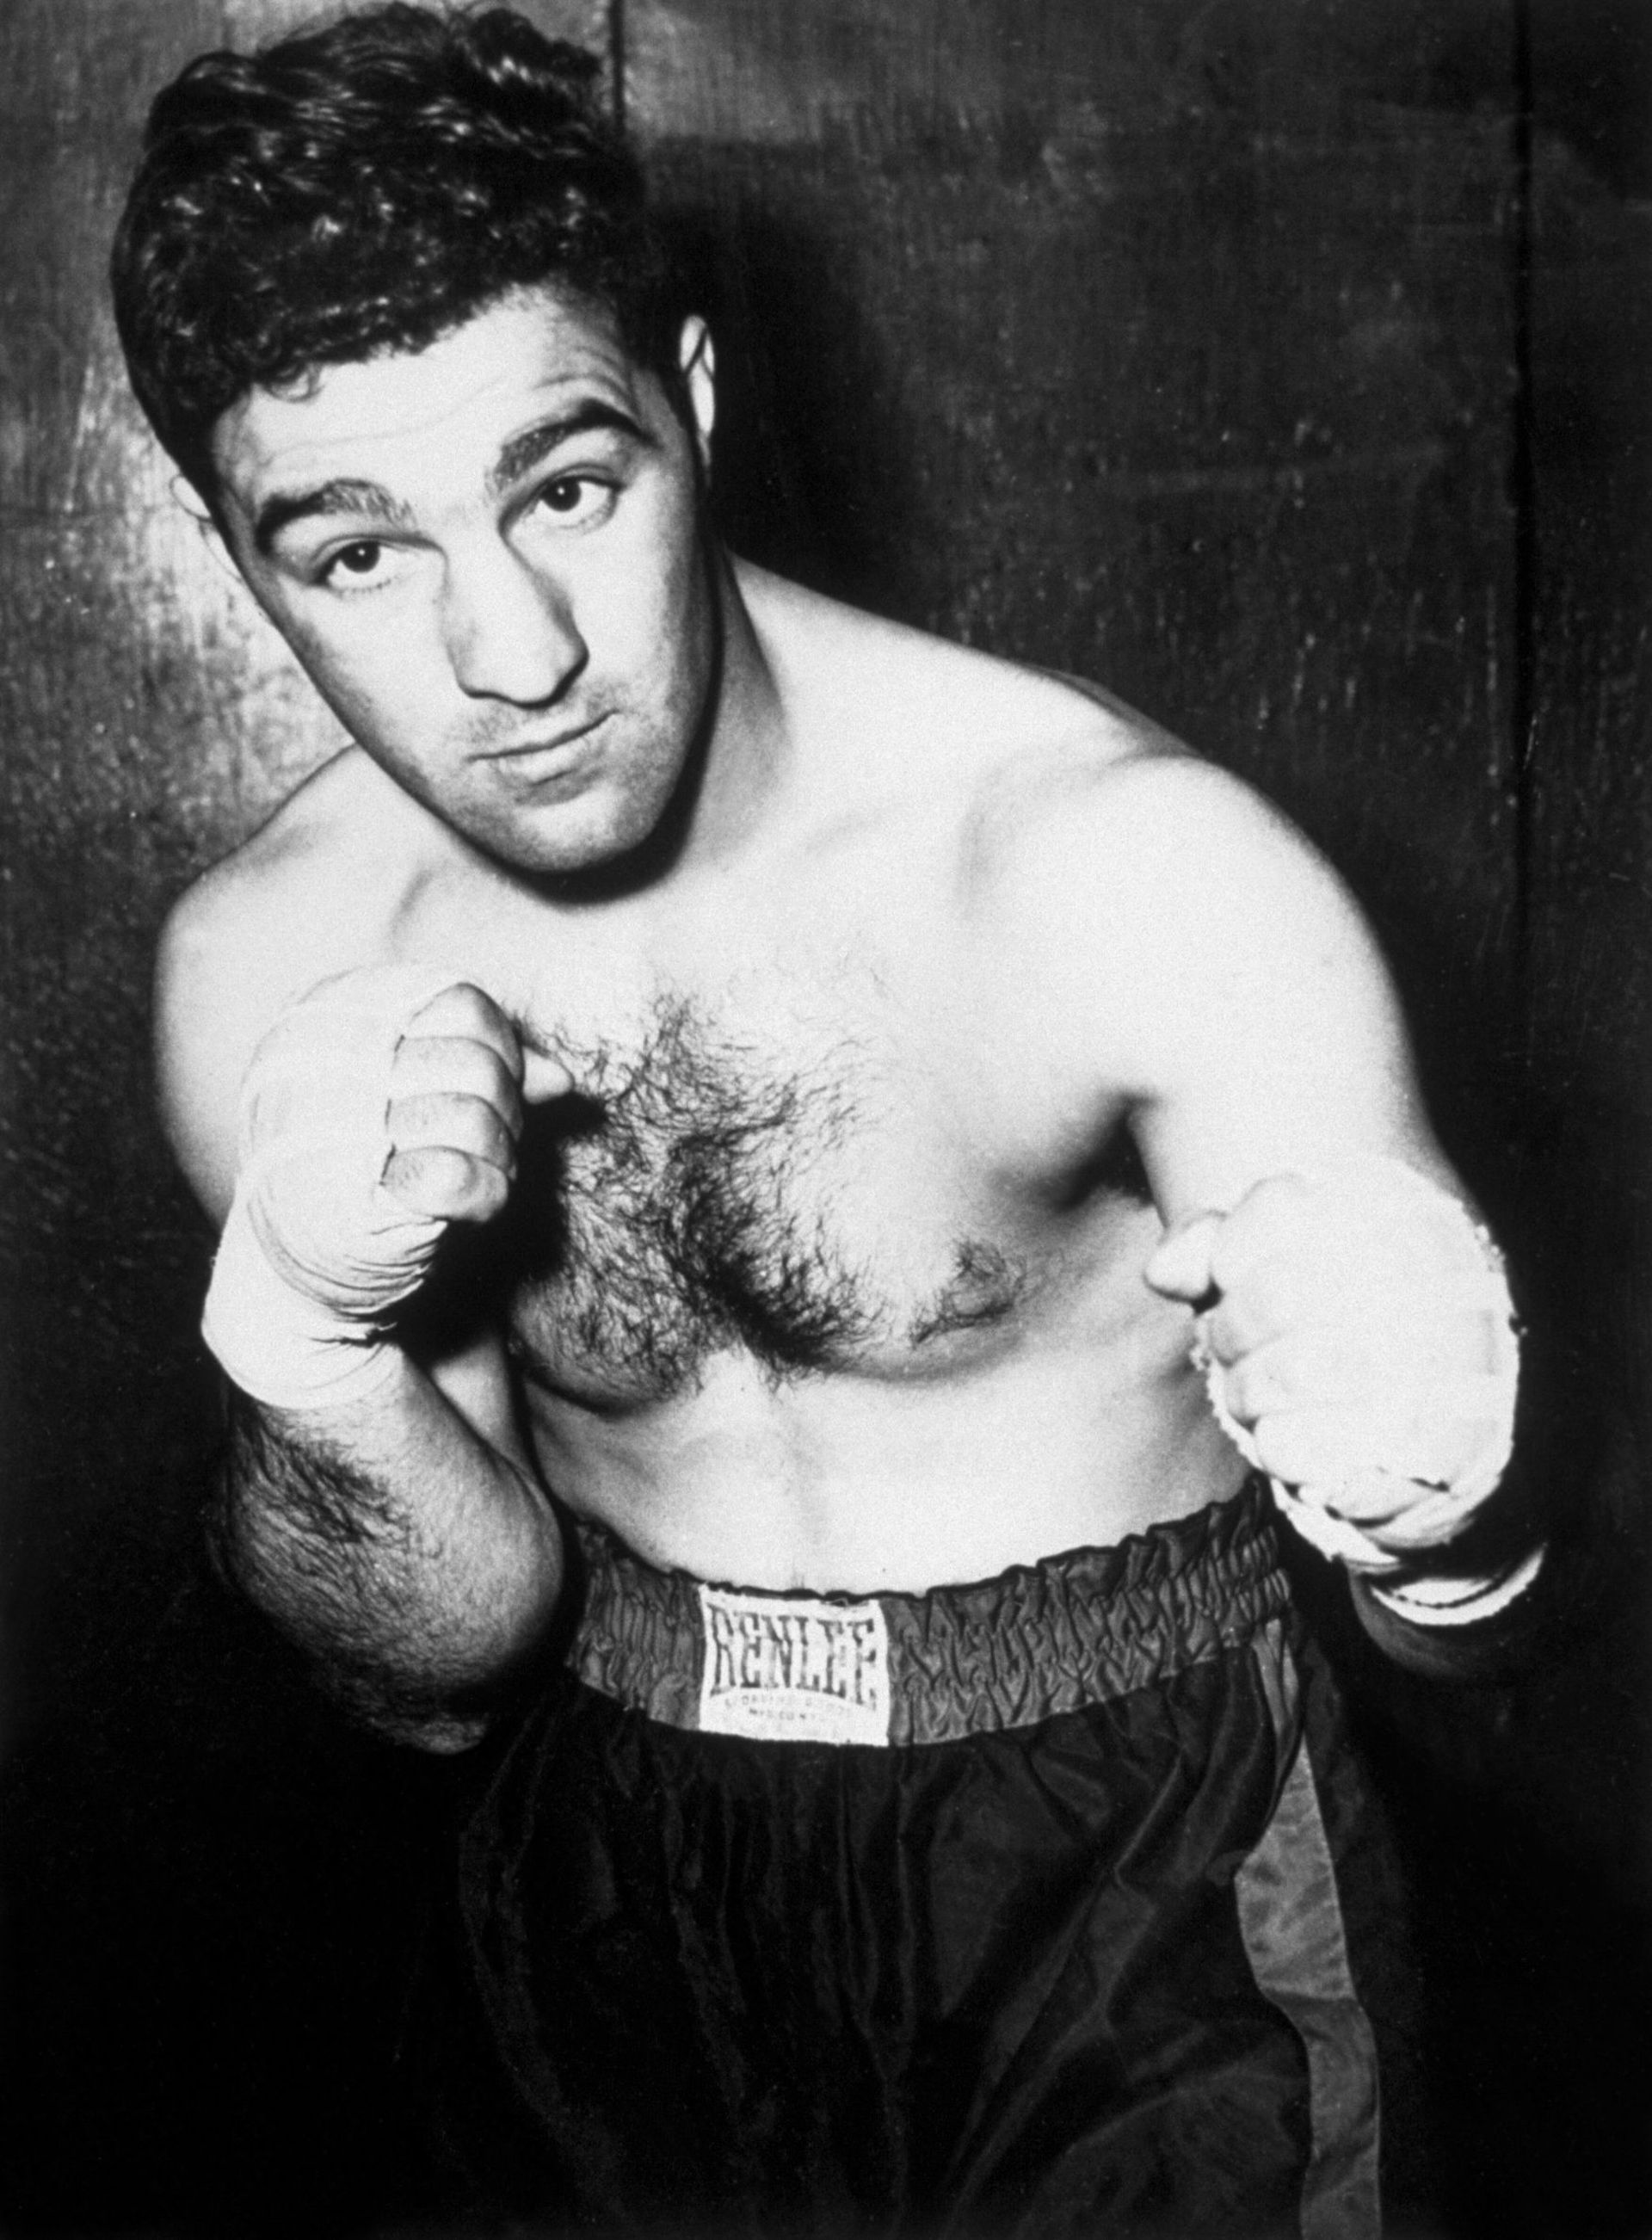 Роки Марчиано е легендарно име за бокса, като е смятан за един от най-добрите в цялата история на този спорт. Той е и единственият боксьор в тежка категория, който се оттегля без загуба на профиринга след 49 победи, от които 43 с нокаут. Държи световната титла между 1952 и 1956 г., като в този период побеждава колоси като Джо Луис, Джързи Джо Уолкът и Роланд ла Старца. Загива на 45 години в катастрофа с малък частен самолет край Айова, където отива при приятели. Нощният полет се оказва проблемен заради лошото време, а пилотът опитва да приземи триместния самолет, но го удря в дърво. И тримата загиват на място.